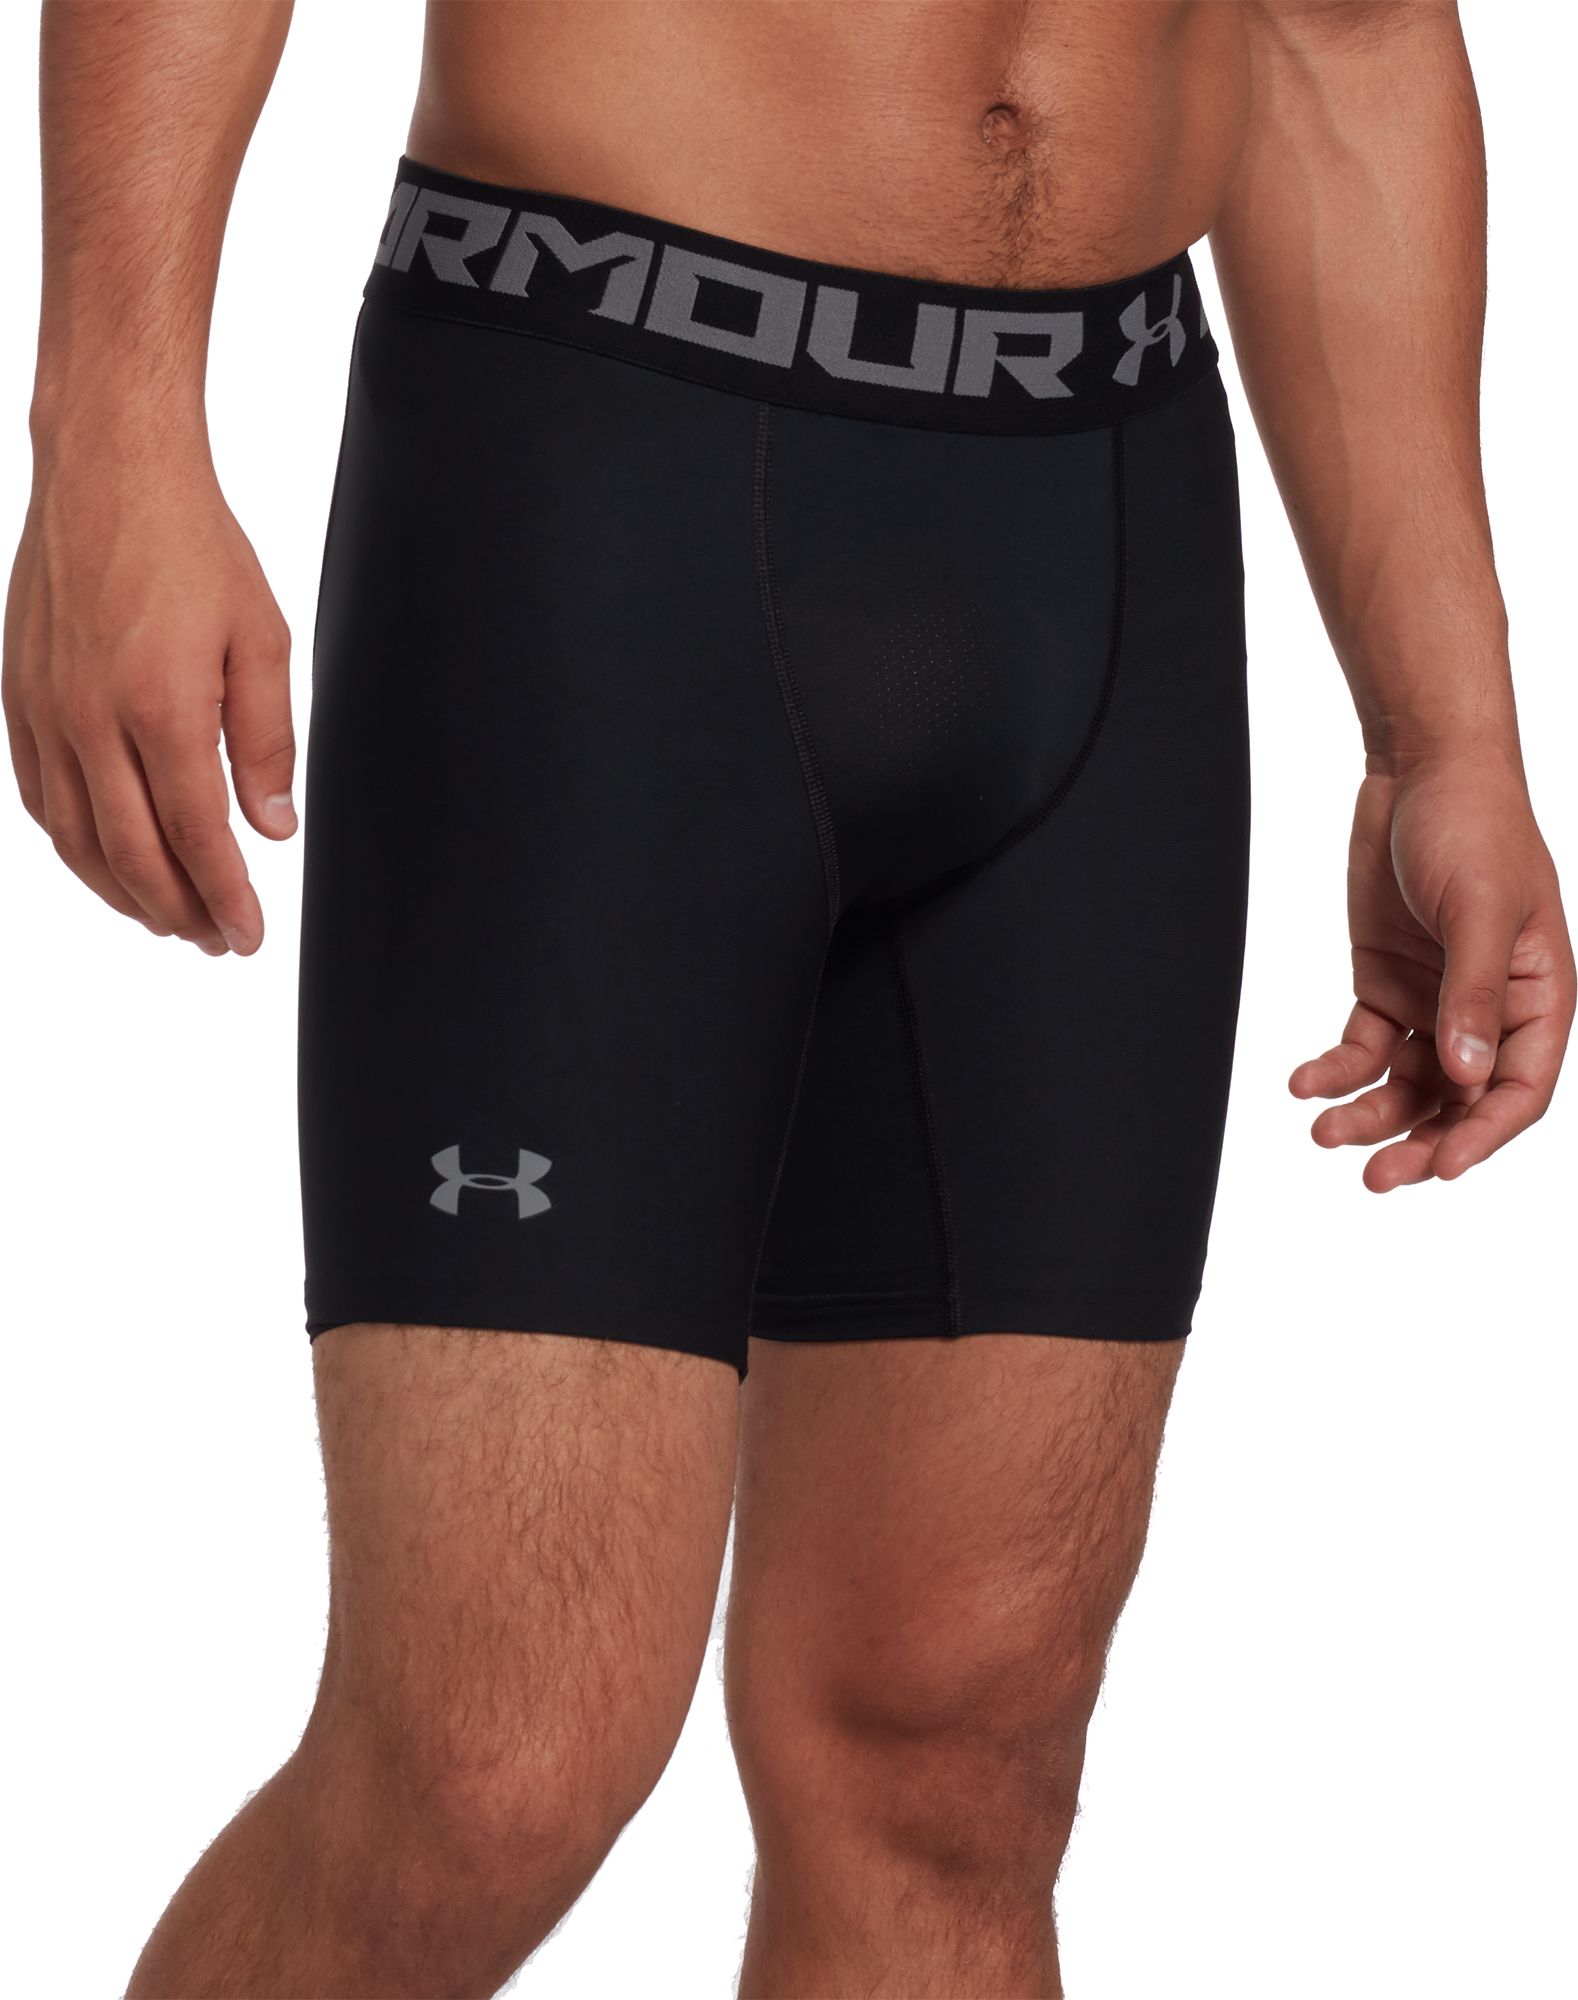 under armour men's compression underwear